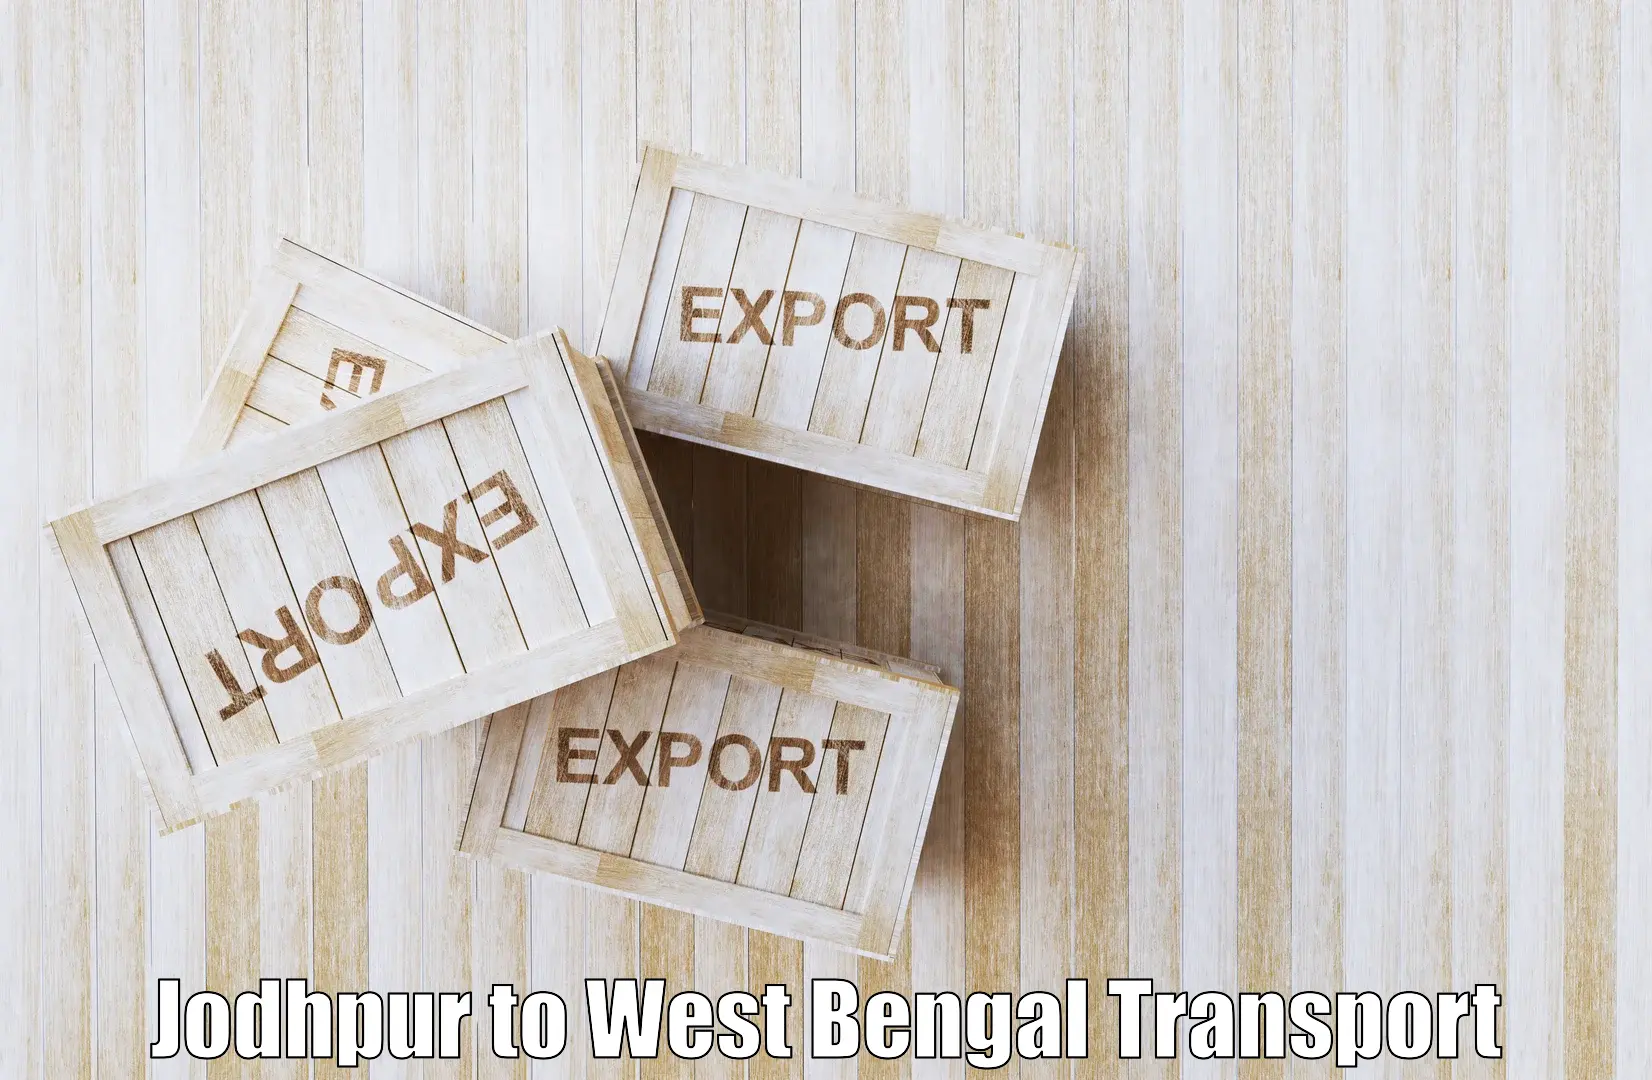 Cargo transport services Jodhpur to South 24 Parganas